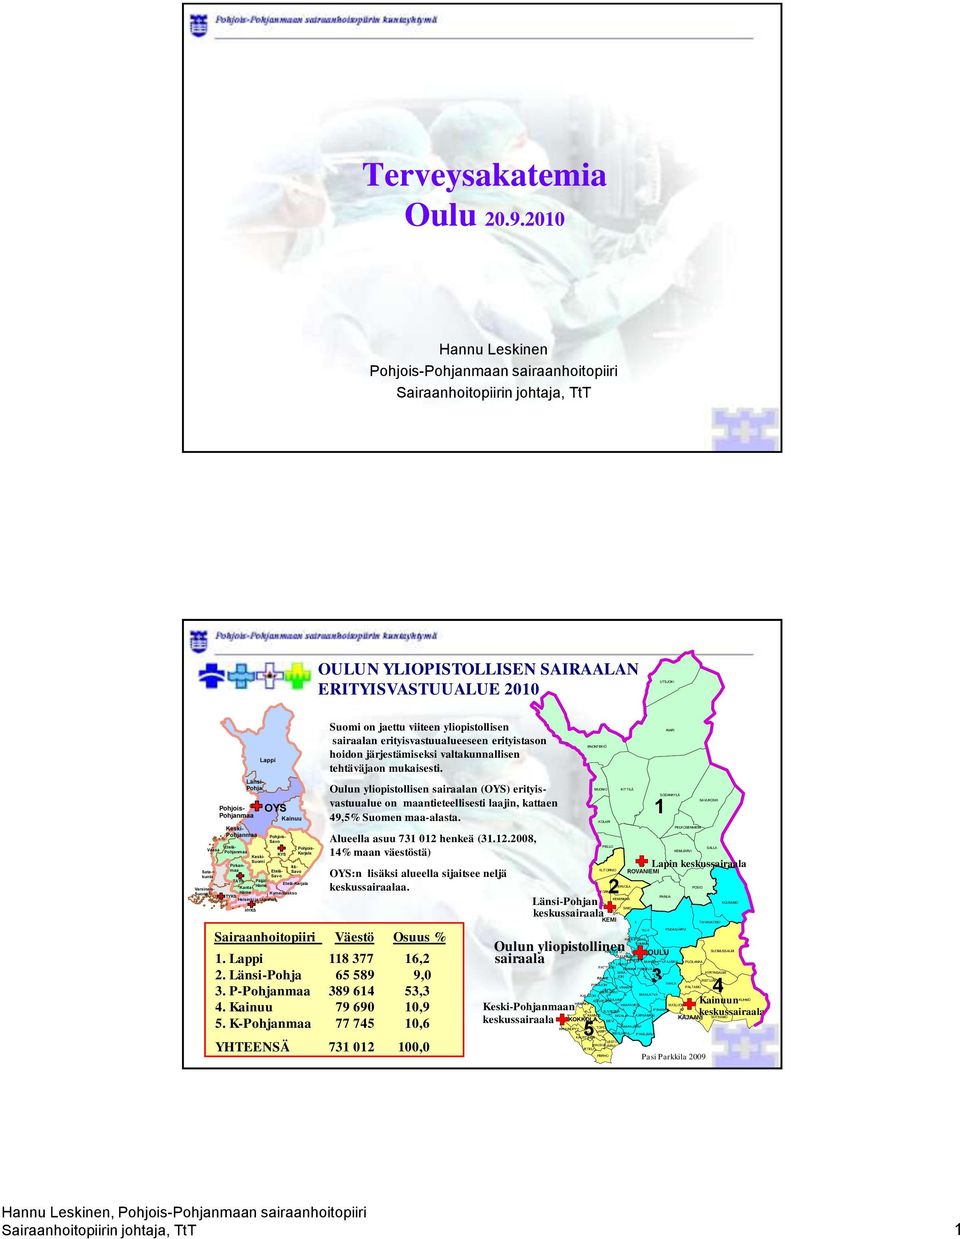 KYS Kainuu Etelä-Karjala Kymenlaakso Suomi on jaettu viiteen yliopistollisen sairaalan erityisvastuualueeseen erityistason hoidon järjestämiseksi valtakunnallisen tehtäväjaon mukaisesti.